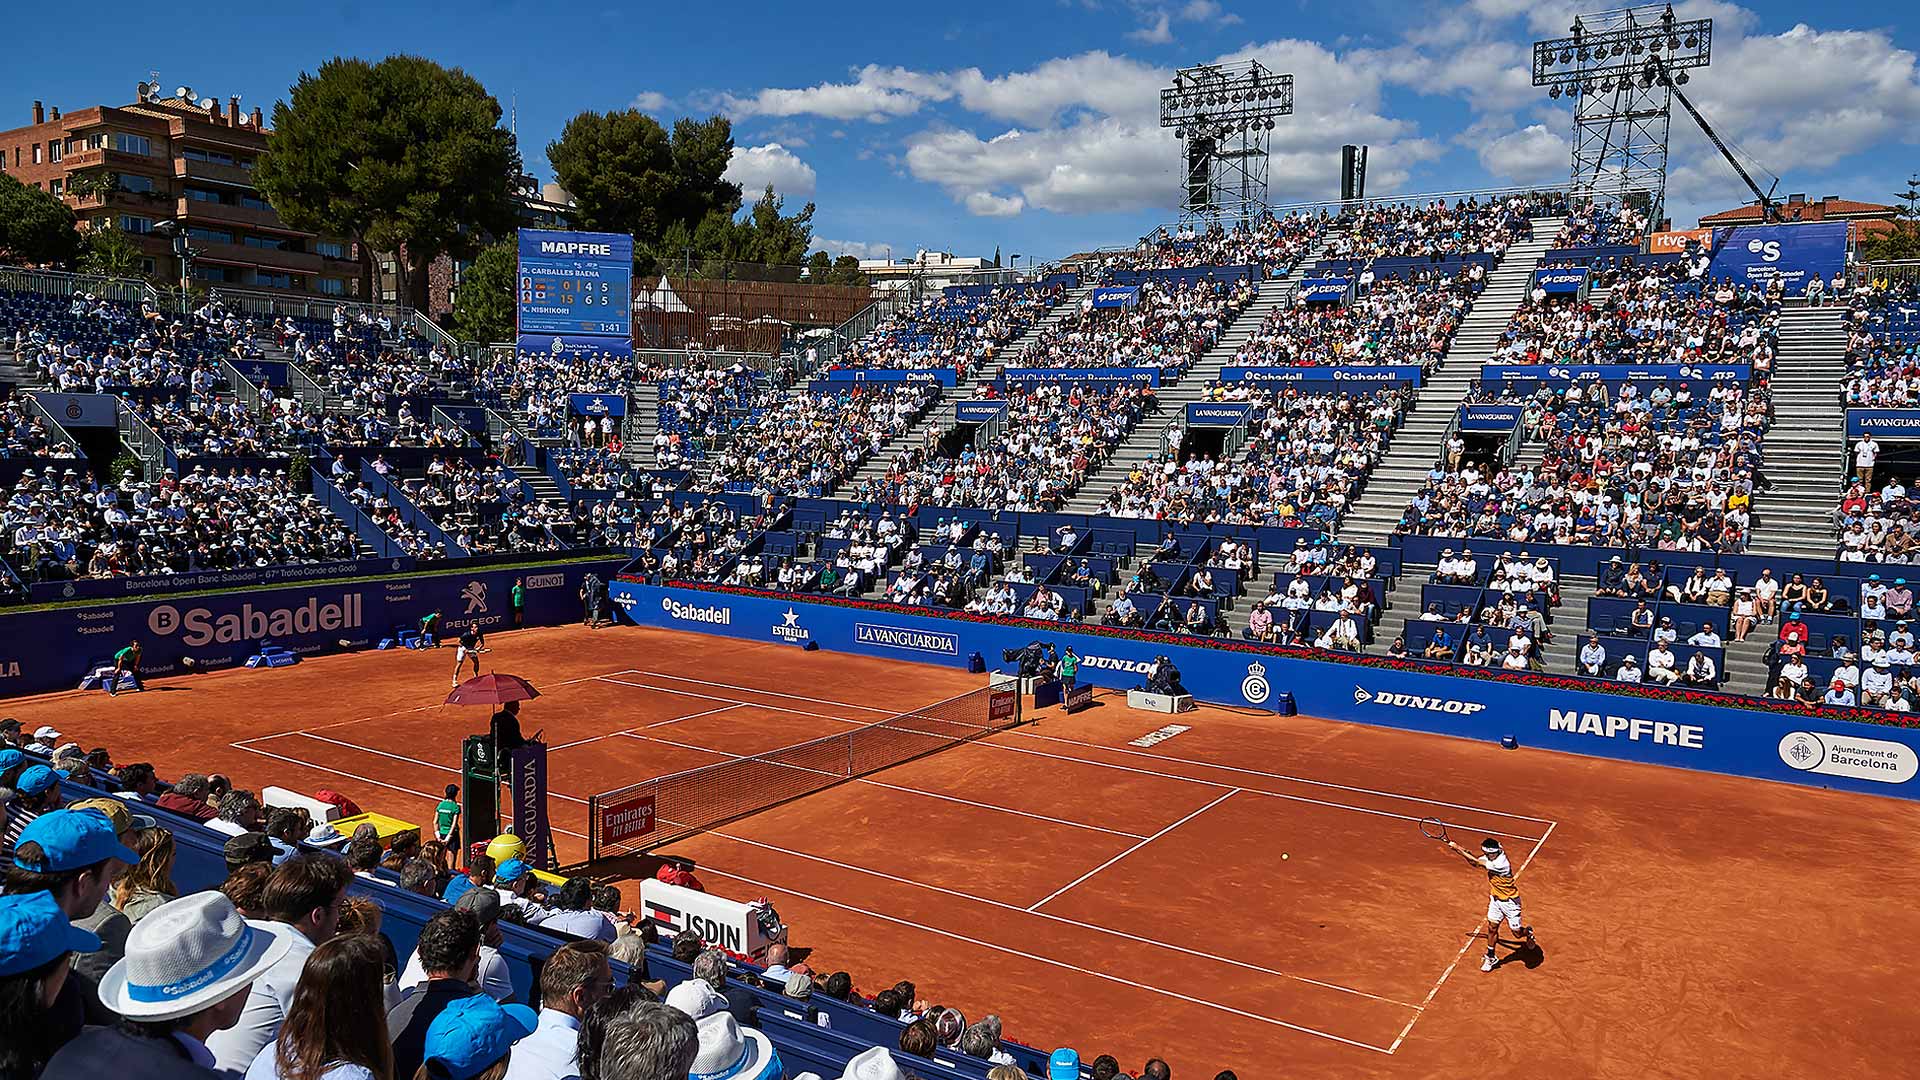 ATP clay season continues in Barcelona, Munich and Banja Luka - main draws analysis